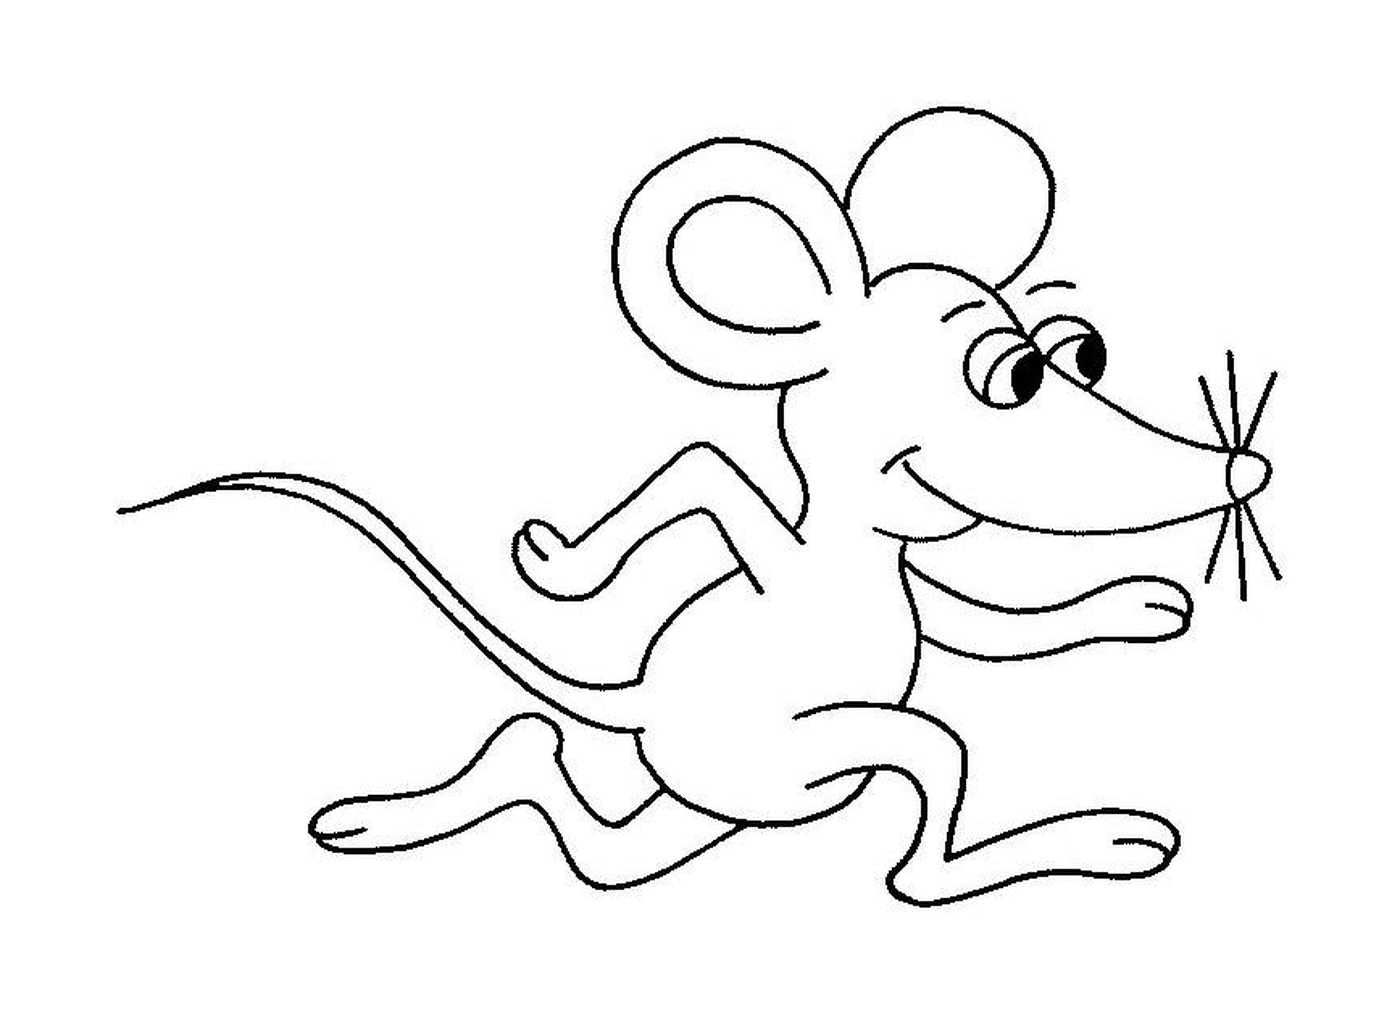  Eine laufende Maus 